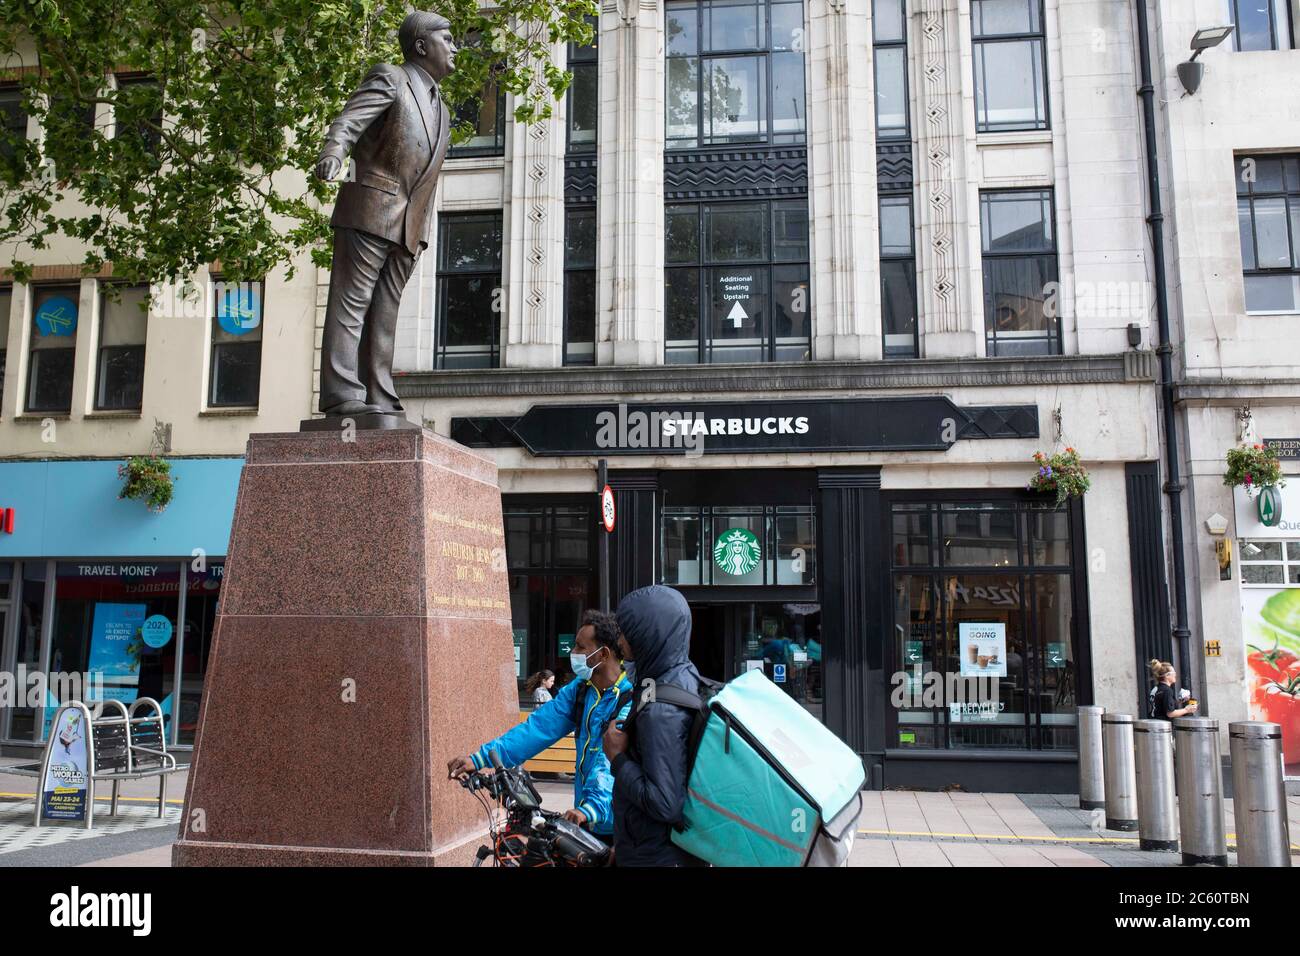 La statue du fondateur du NHS, Aneuvin Bevan, dans le centre-ville de Cardiff, à l'occasion du 72e anniversaire du NHS, juillet 2020. Banque D'Images